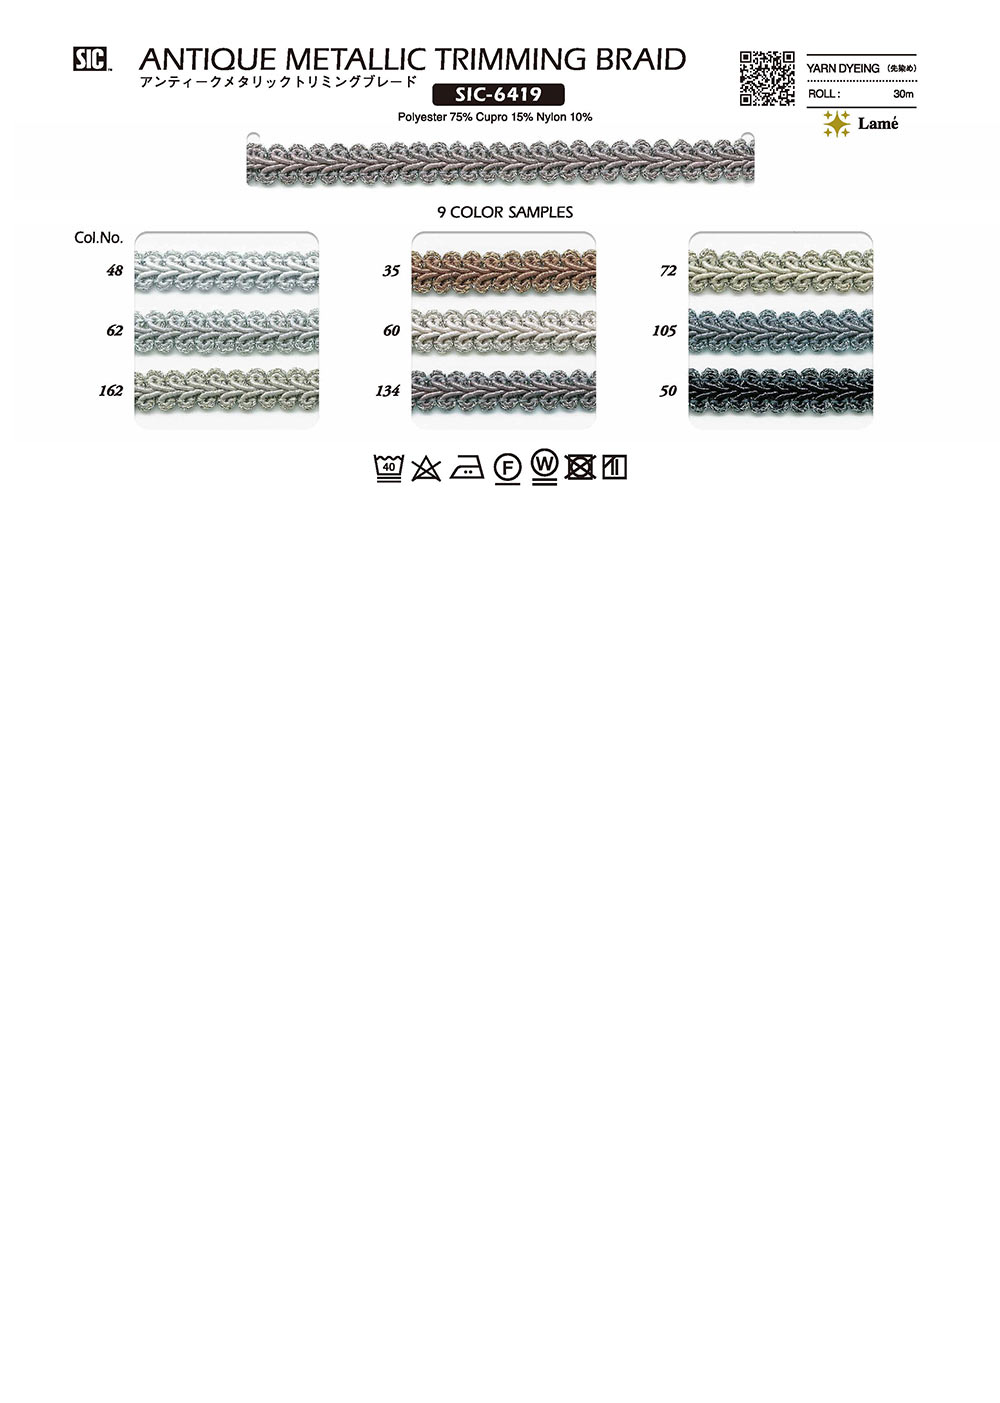 SIC-6419 골동품 메탈릭 트림 블레이드[리본 테이프 코드] SHINDO(SIC)